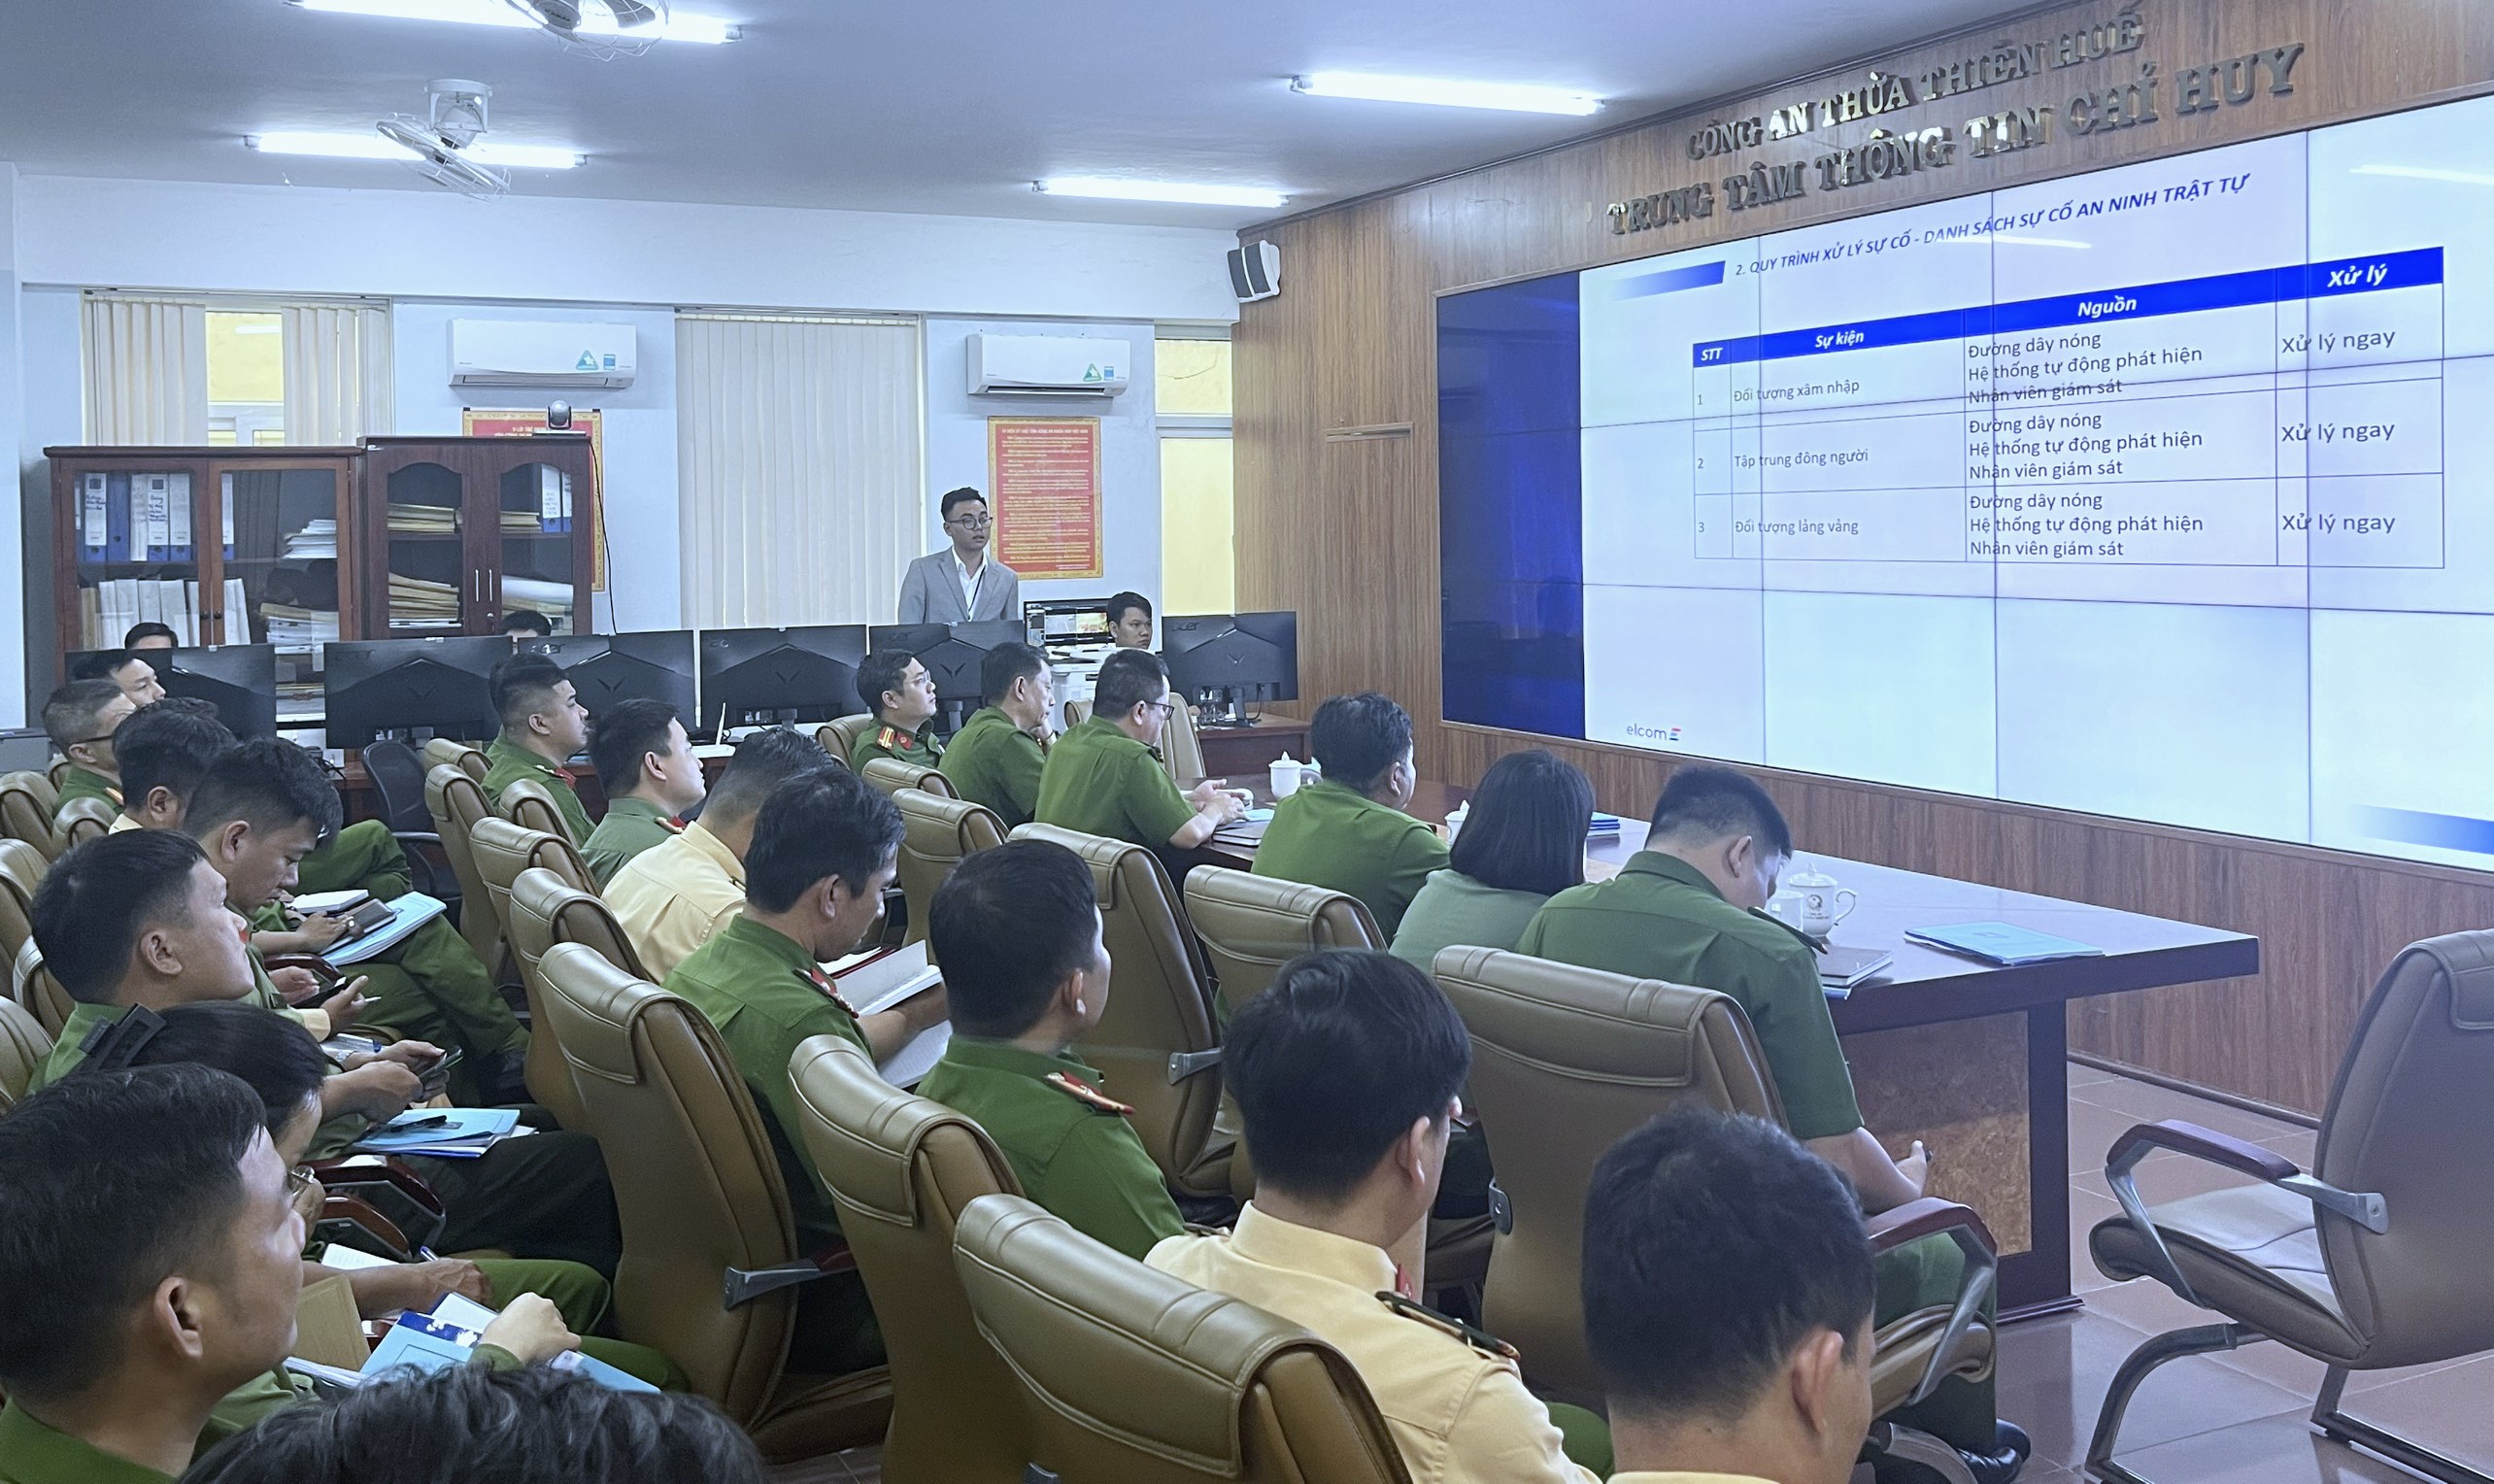 Elcom và Sở Công an Thừa Thiên Huế tổ chức tập huấn, chuyển giao công nghệ camera giám sát